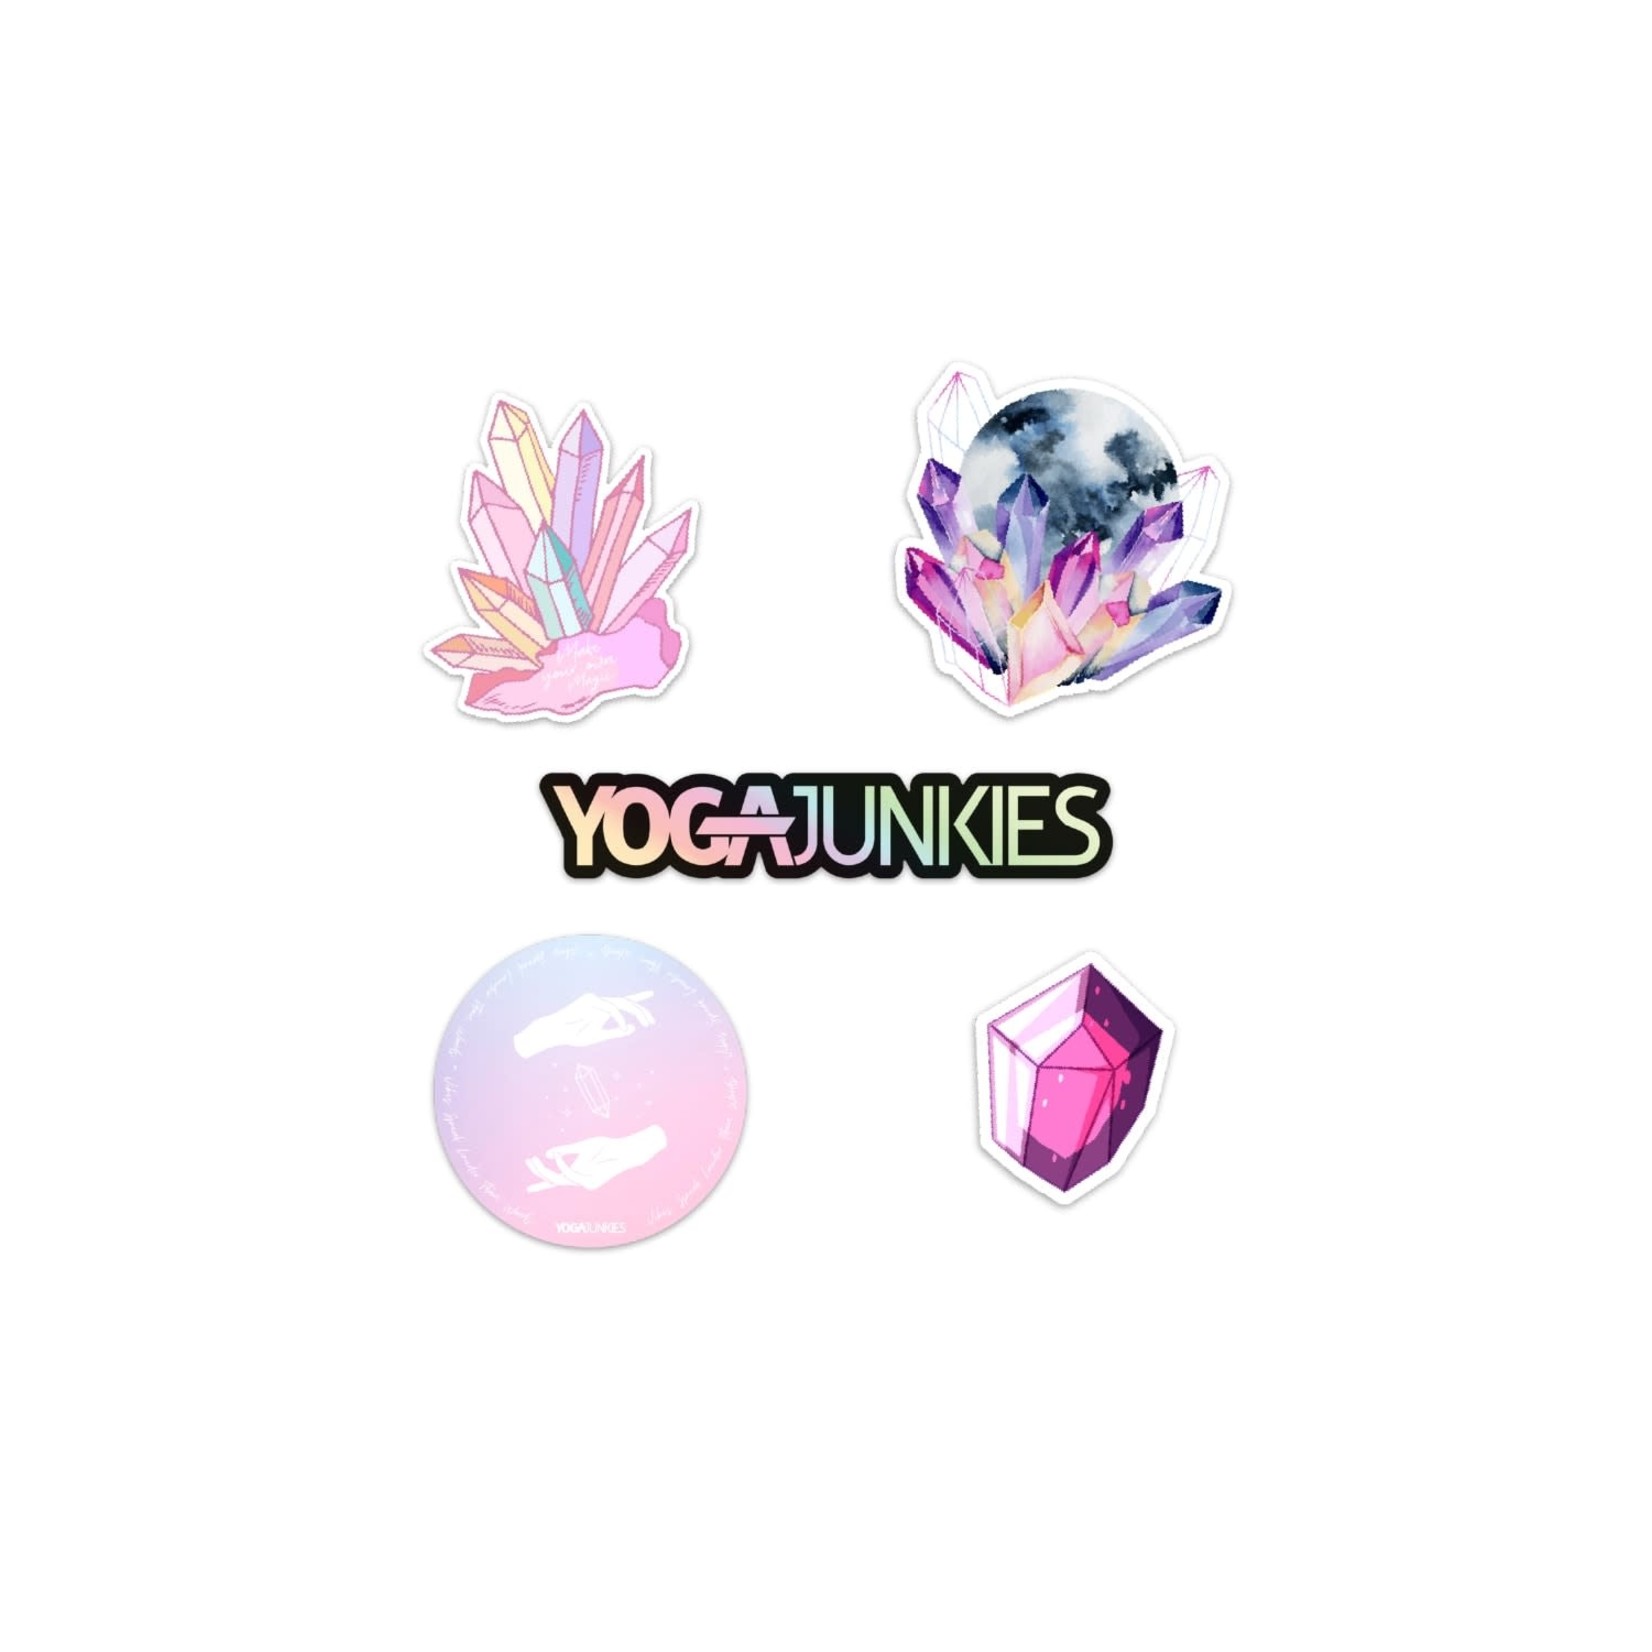 Yoga Junkie Crystal Junkies Box